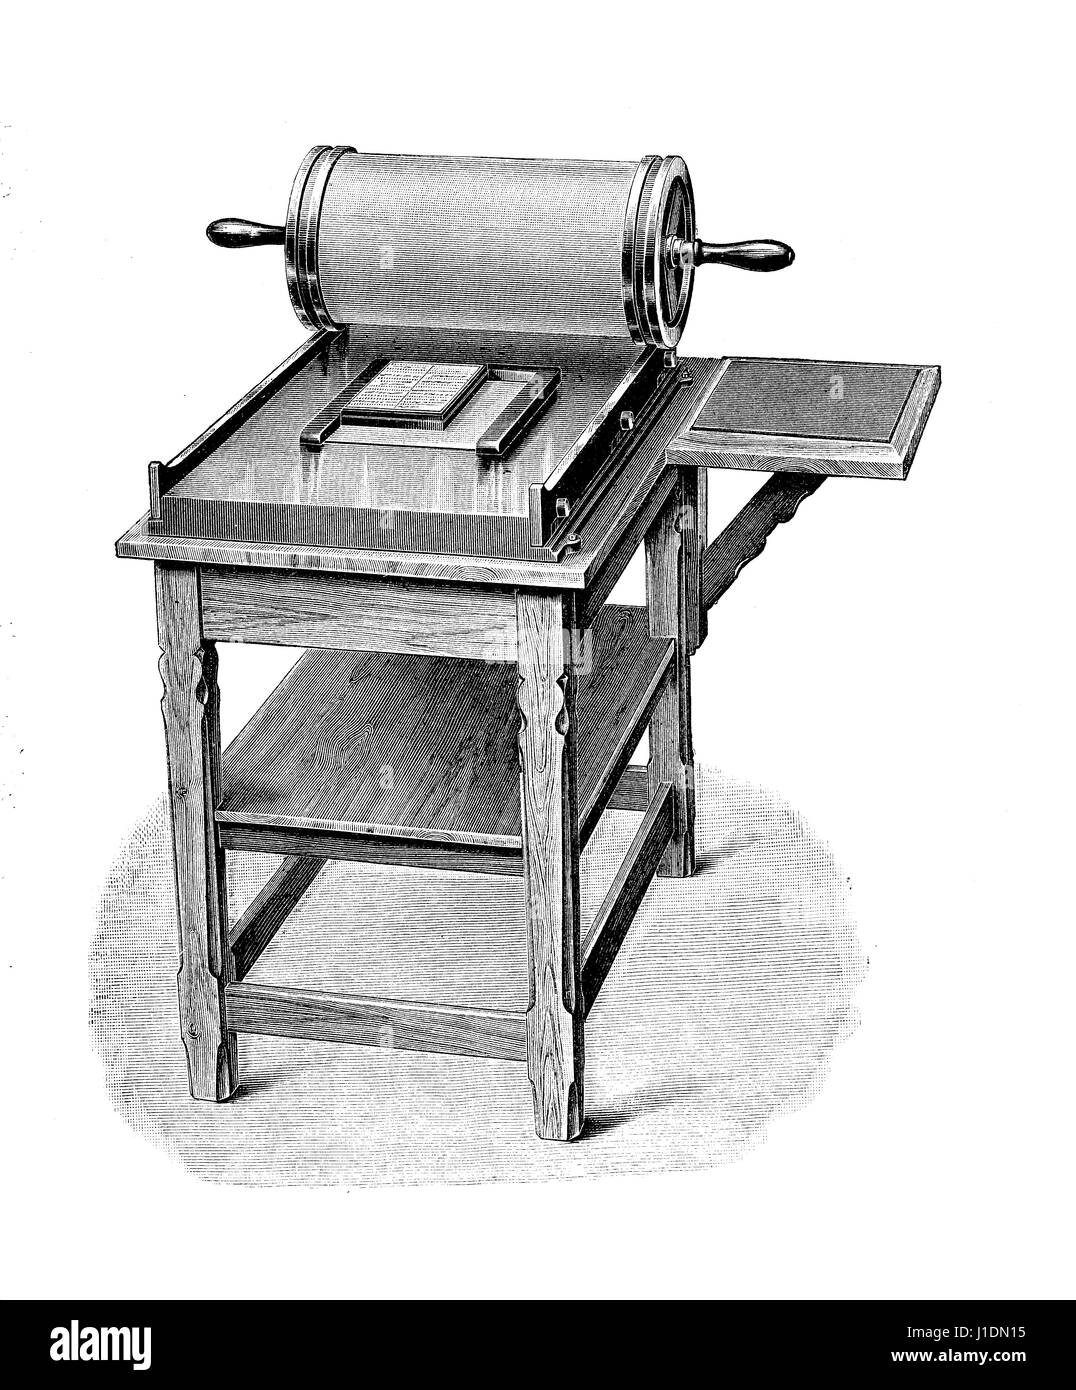 Galería manual temprana duplicator o mimeografiado, vintage grabado Foto de stock